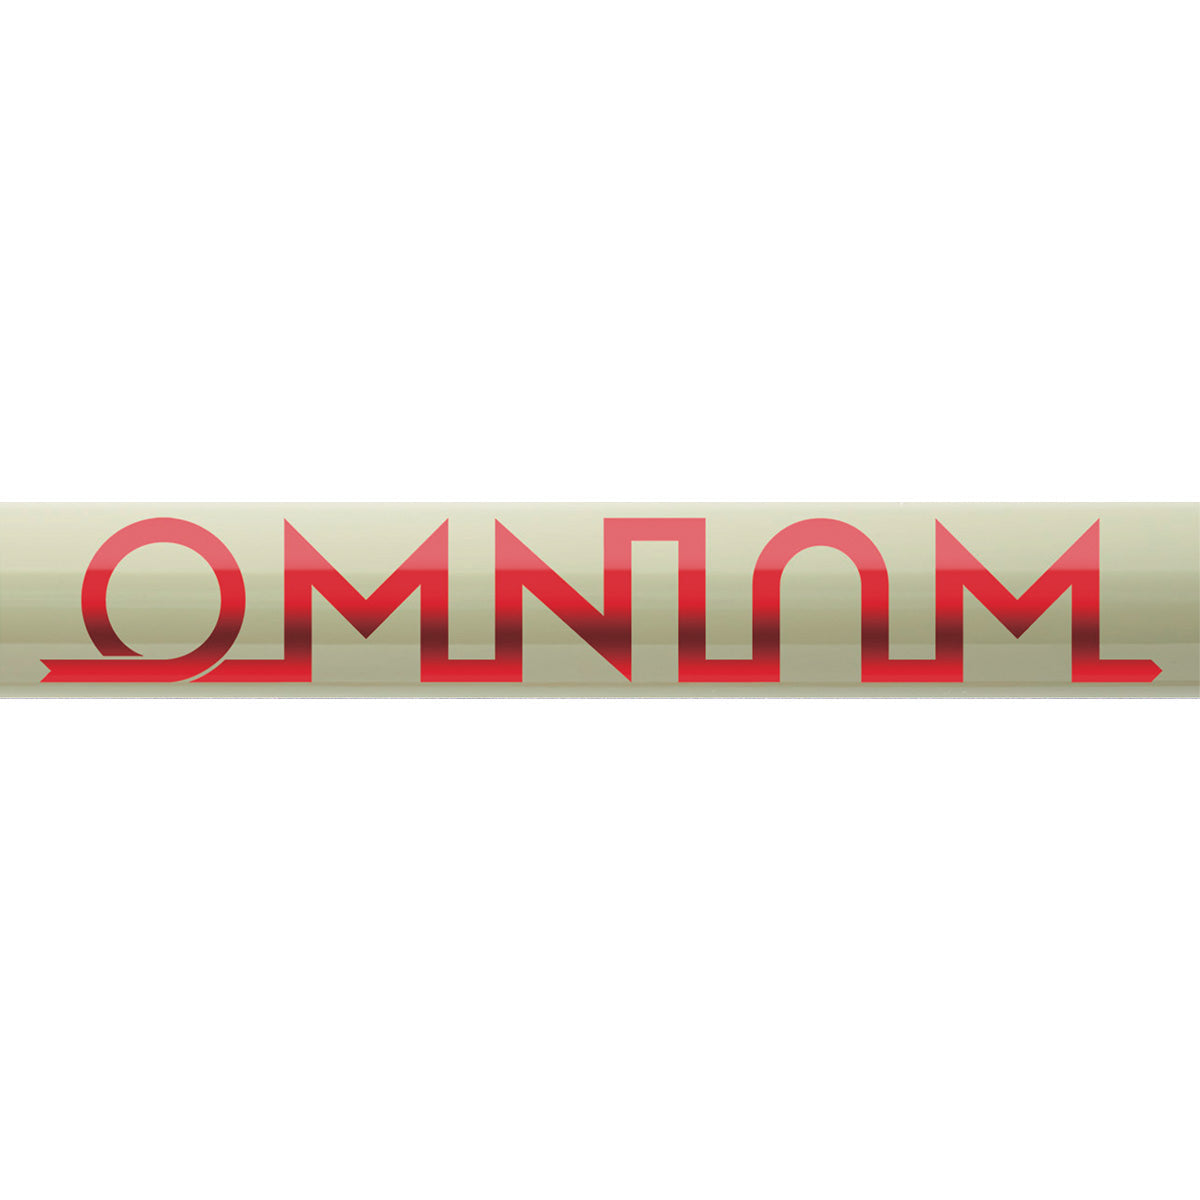 [Pre Order]OMNIUM Cargo V3 Complete Shimano 1x11